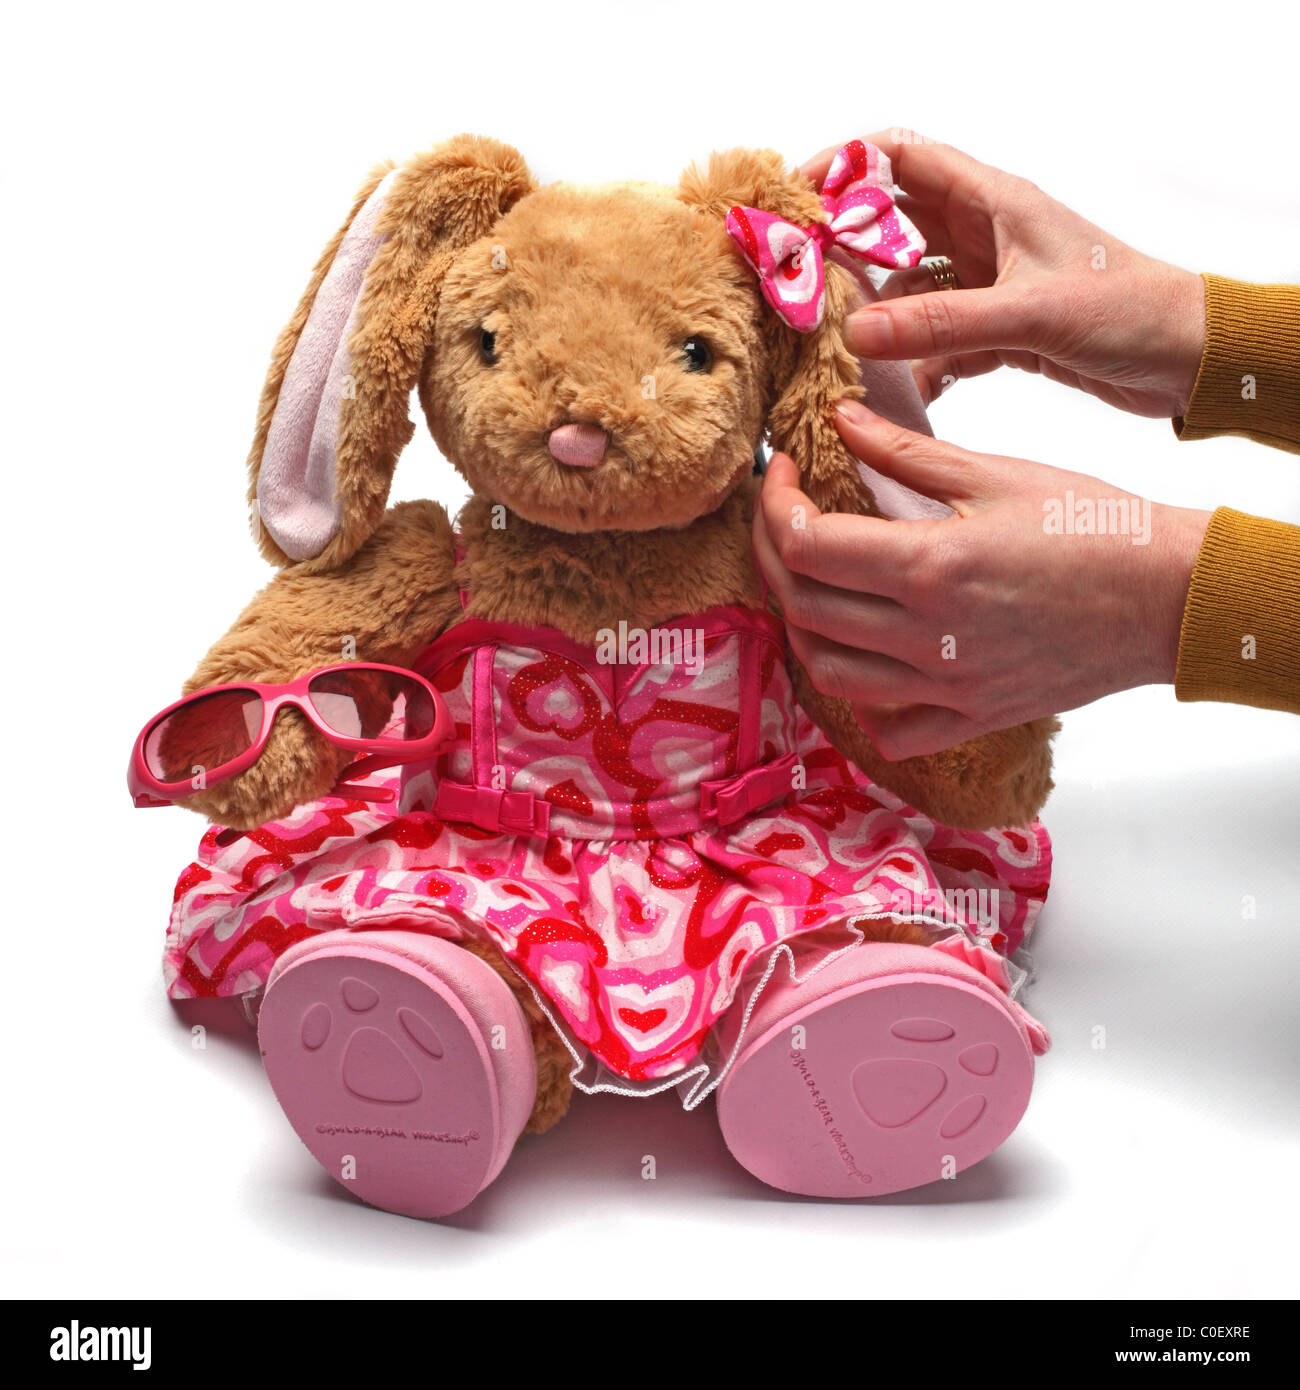 Build A Bear stuffed toys Stock Photo